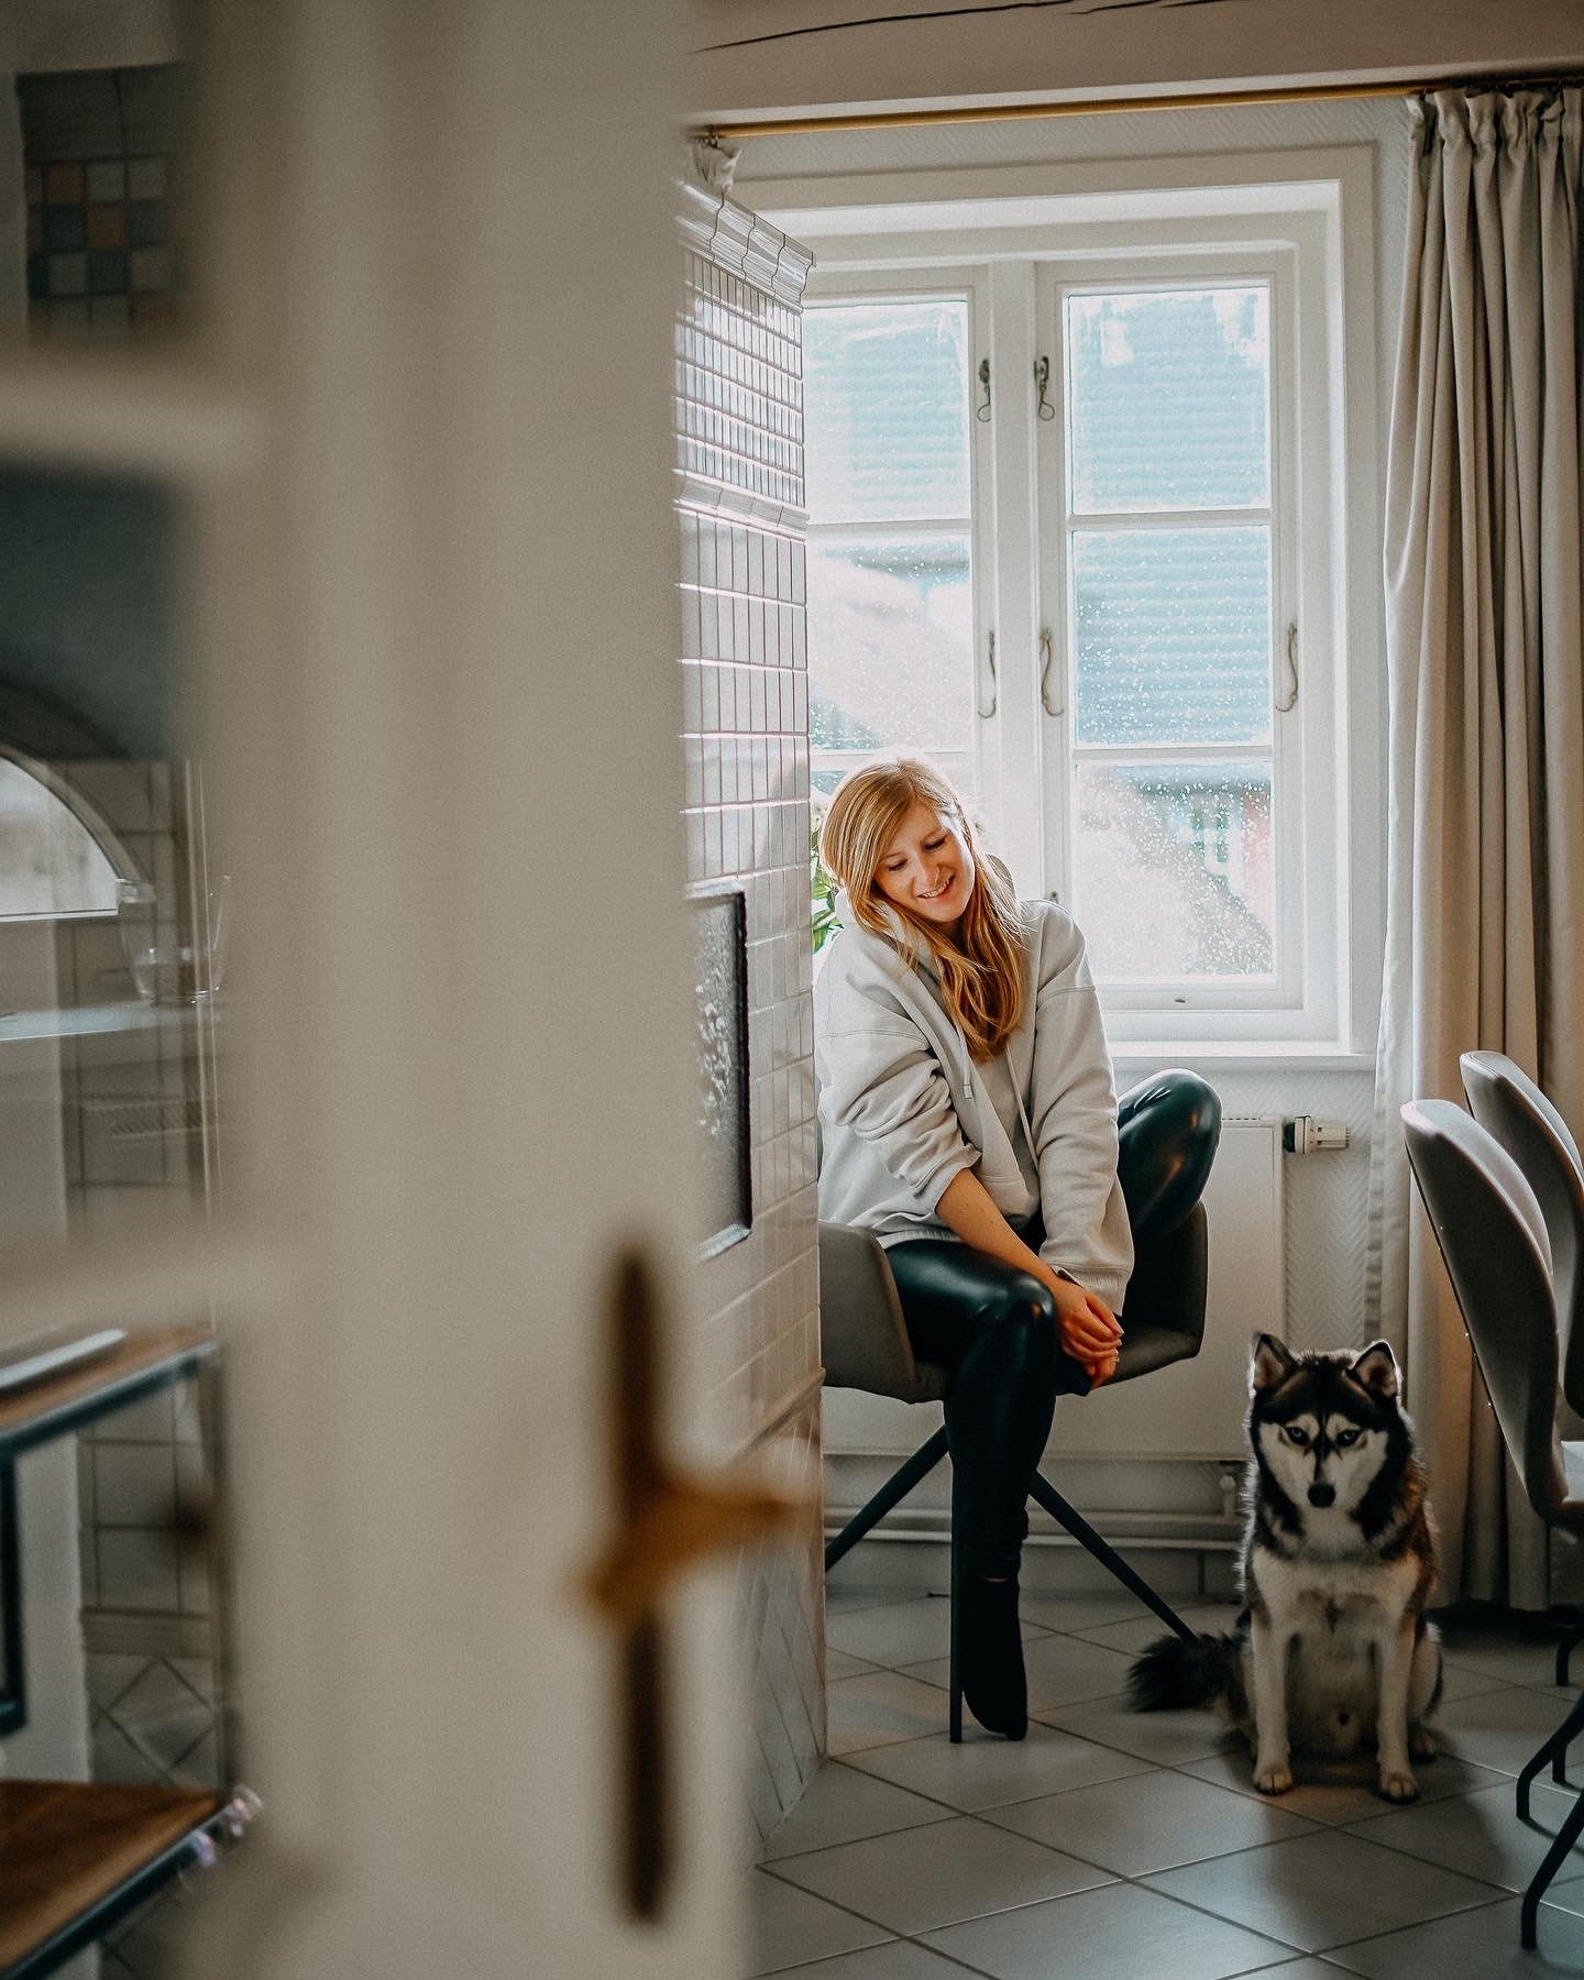 Ferienwohnung Amrum übernachten Urlaub mit Hund Nordseeinsel Amrum Kurztrip Reiseblog